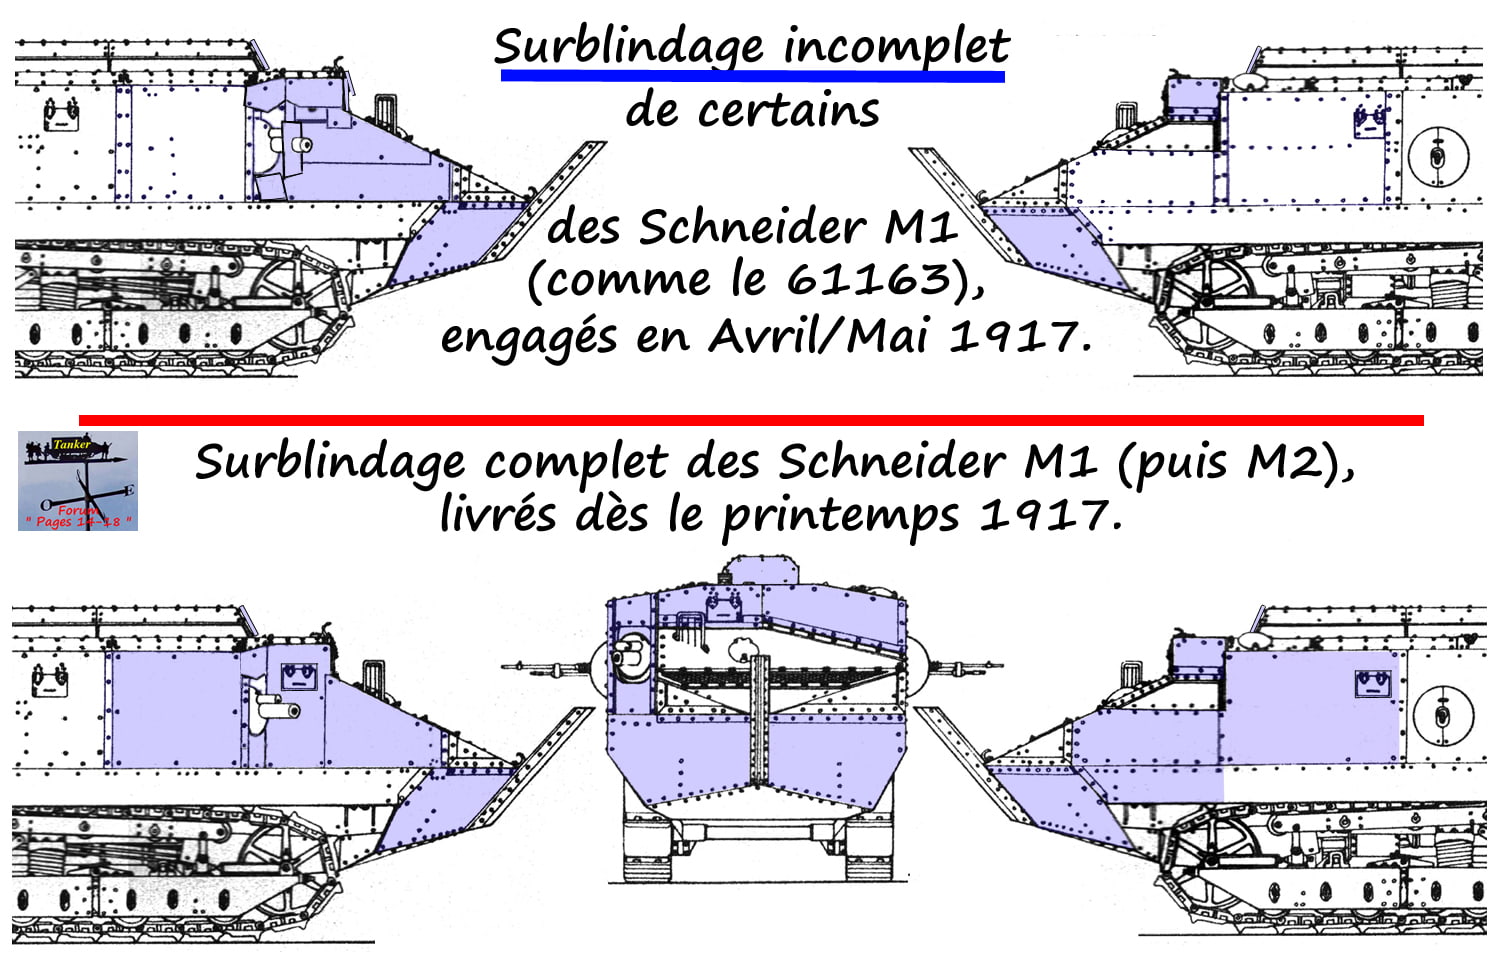 09 - Surblindage du Schneider M1-min.jpg